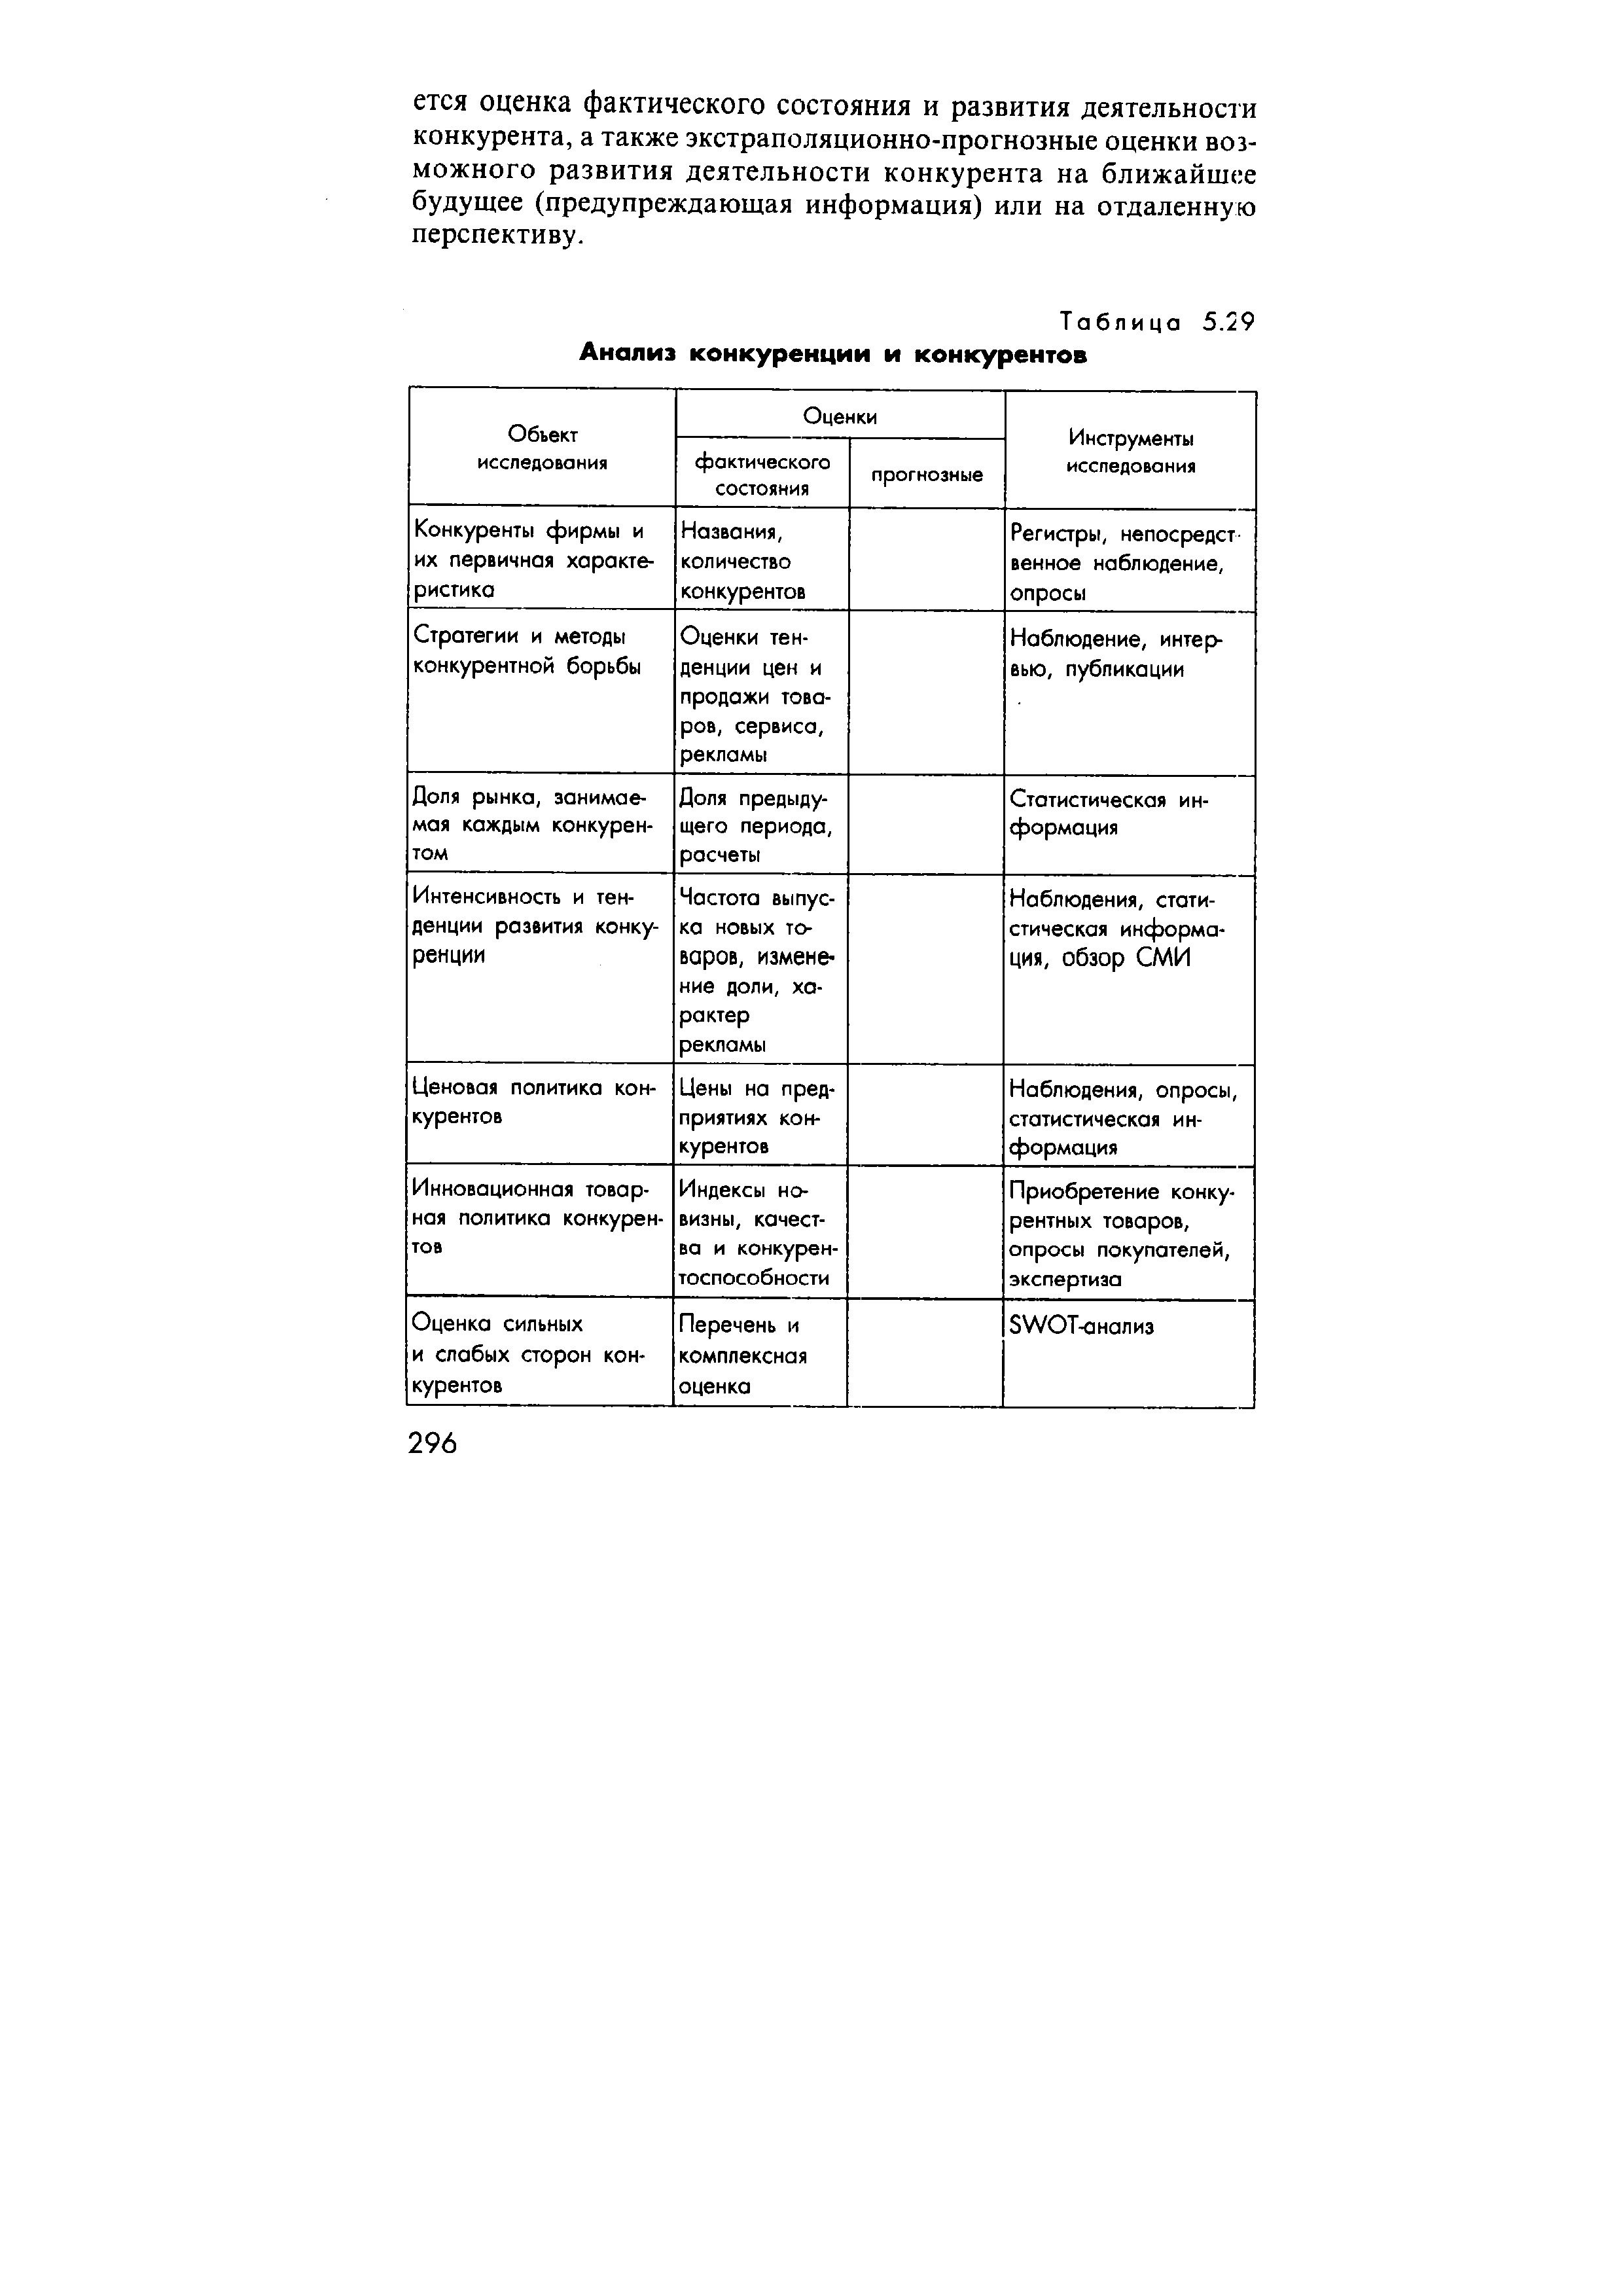 Таблица 5.29 Анализ конкуренции и конкурентов
